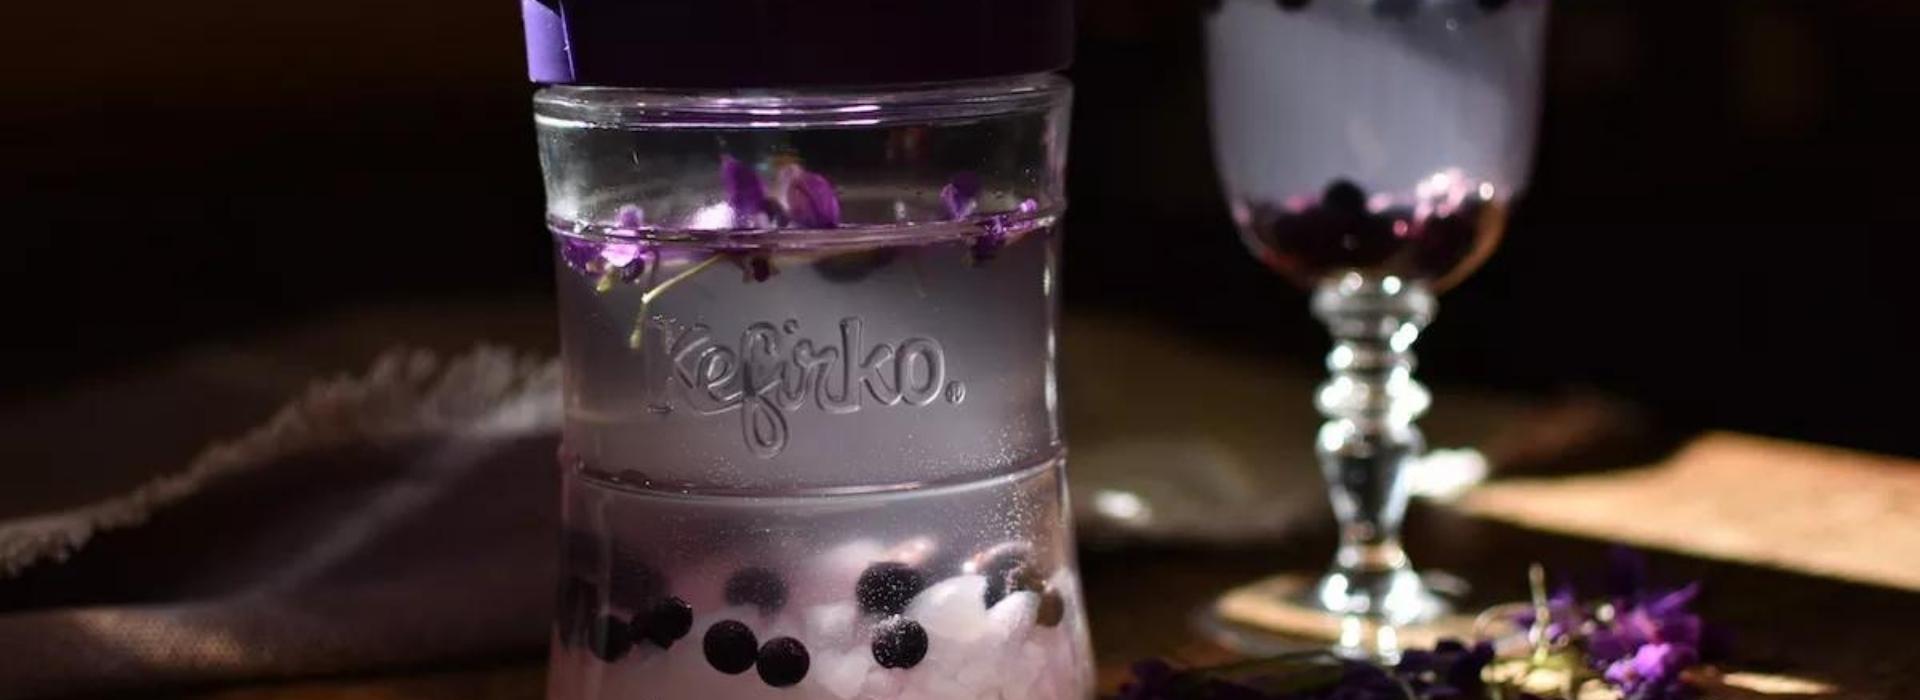 tarro de cristal con kefir de agua flores violetas y bolitas de pimienta negra